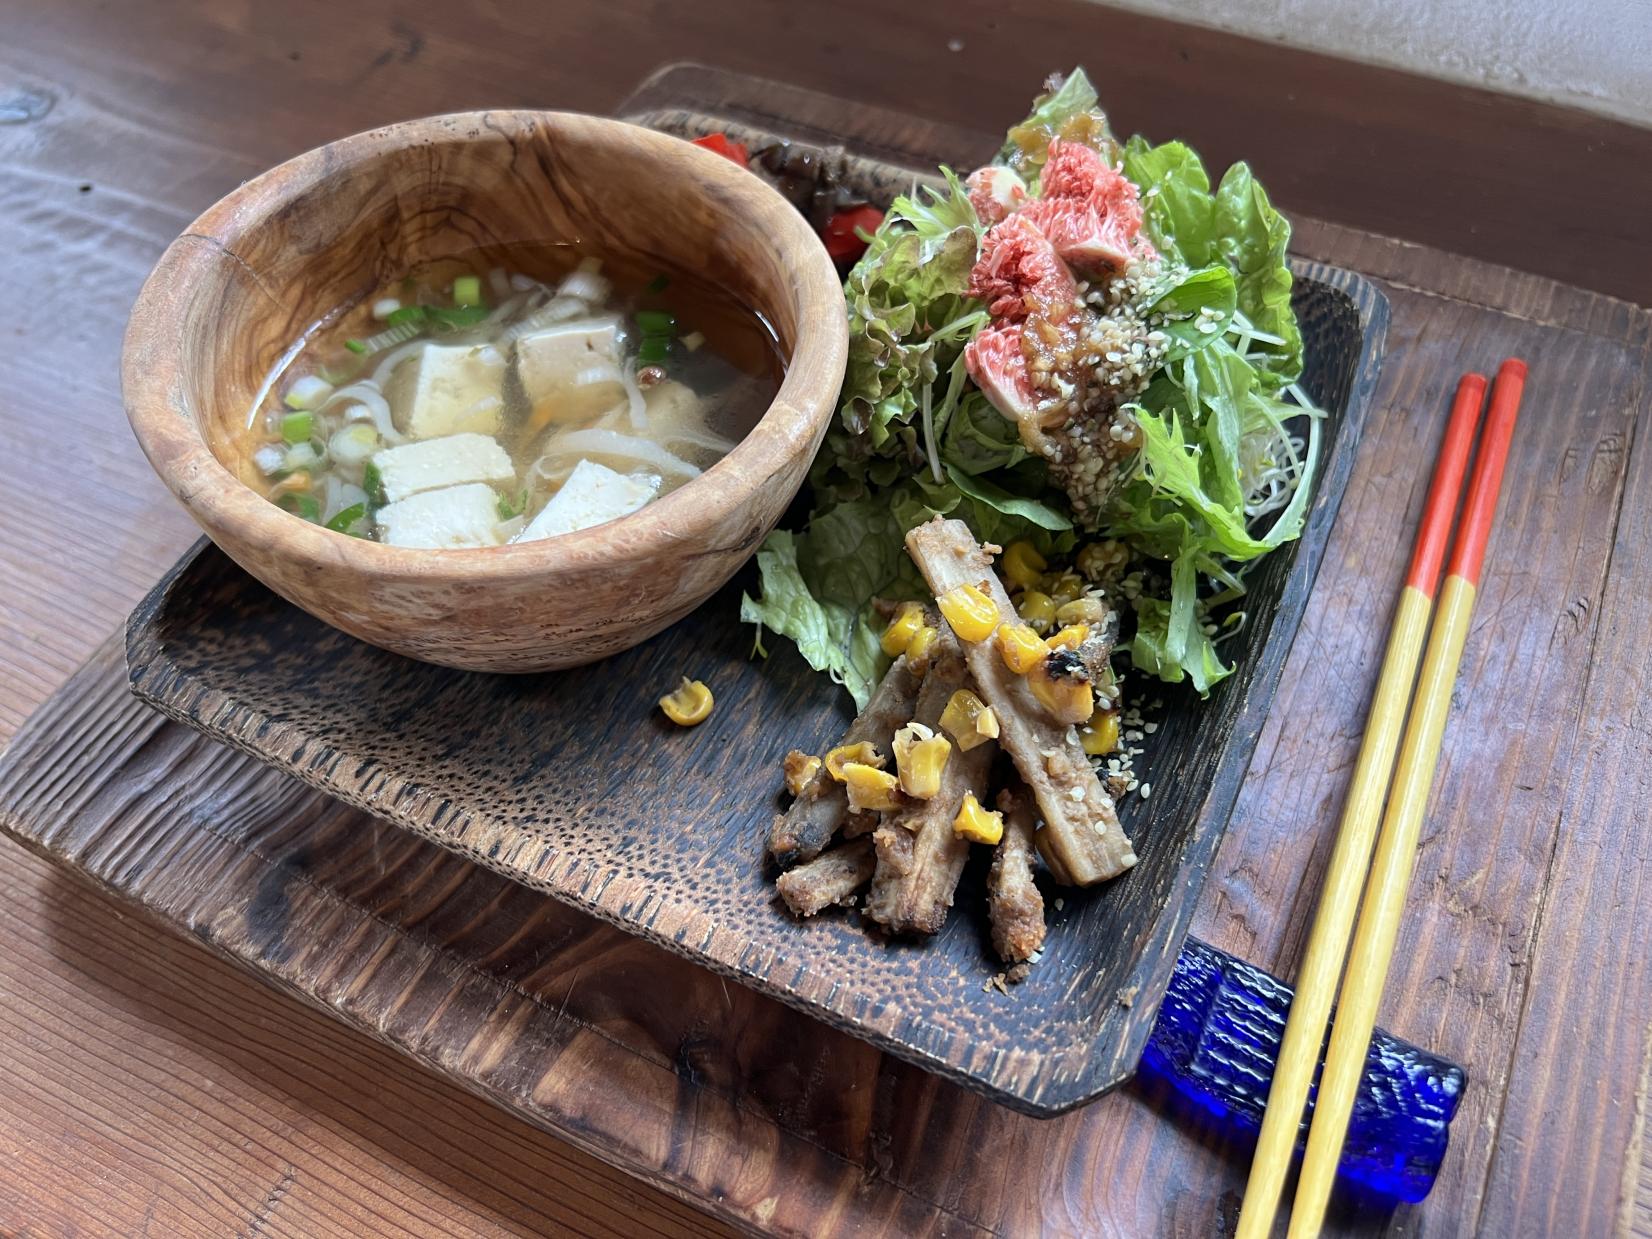 活用宫崎县产食材烹调出纯素料理的咖啡厅&餐厅-2